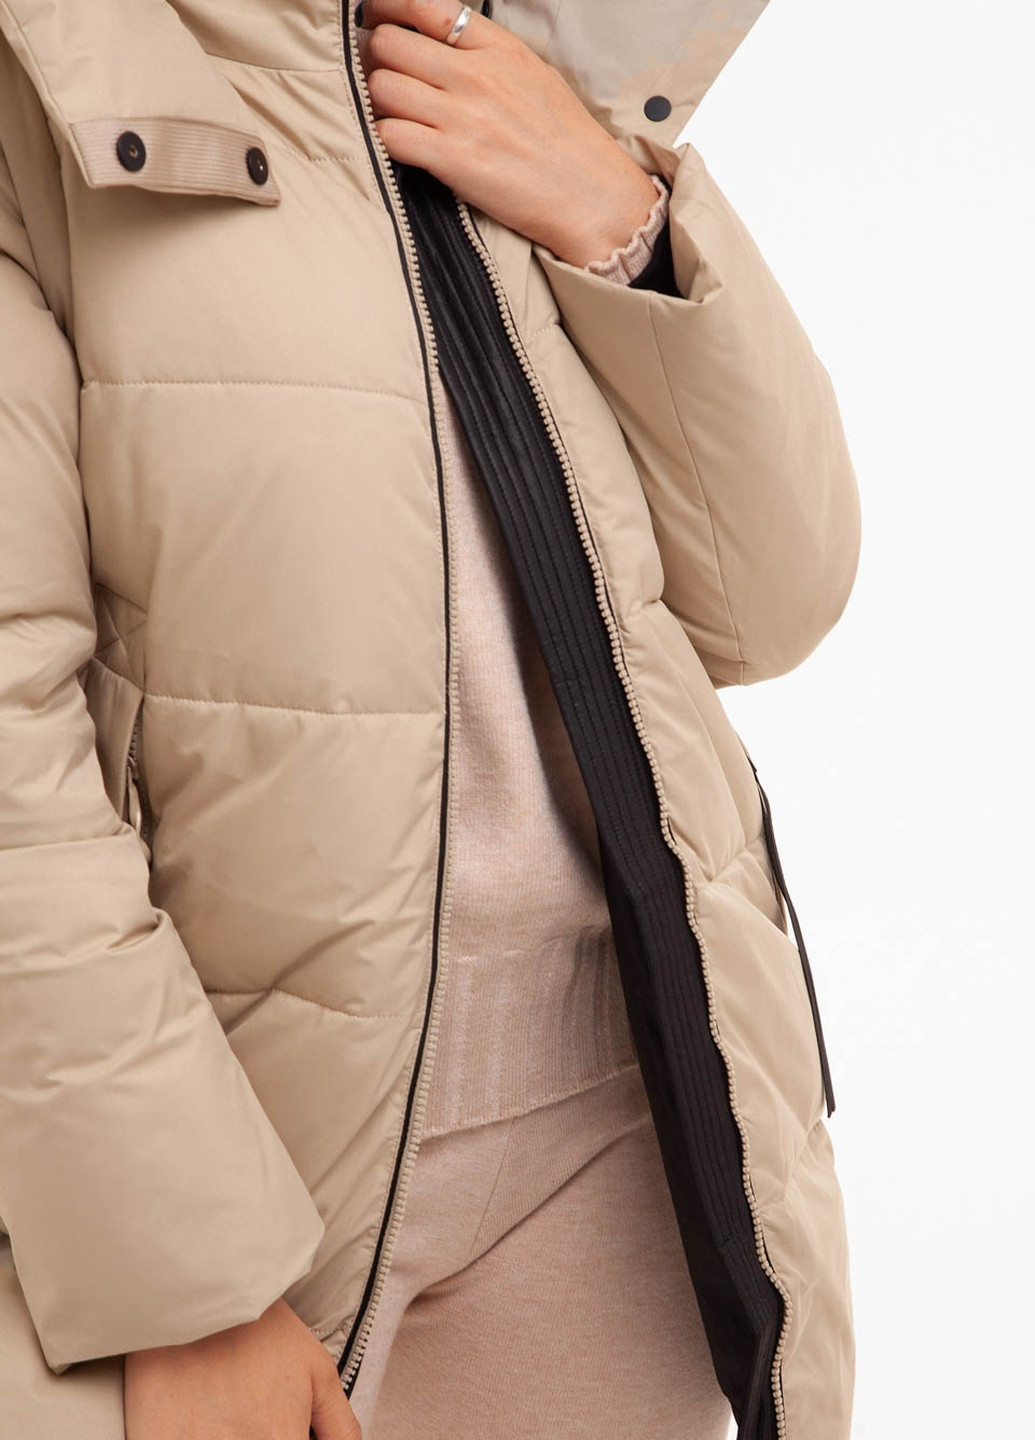 Бежевая зимняя женская куртка-жилет Towmy 3205